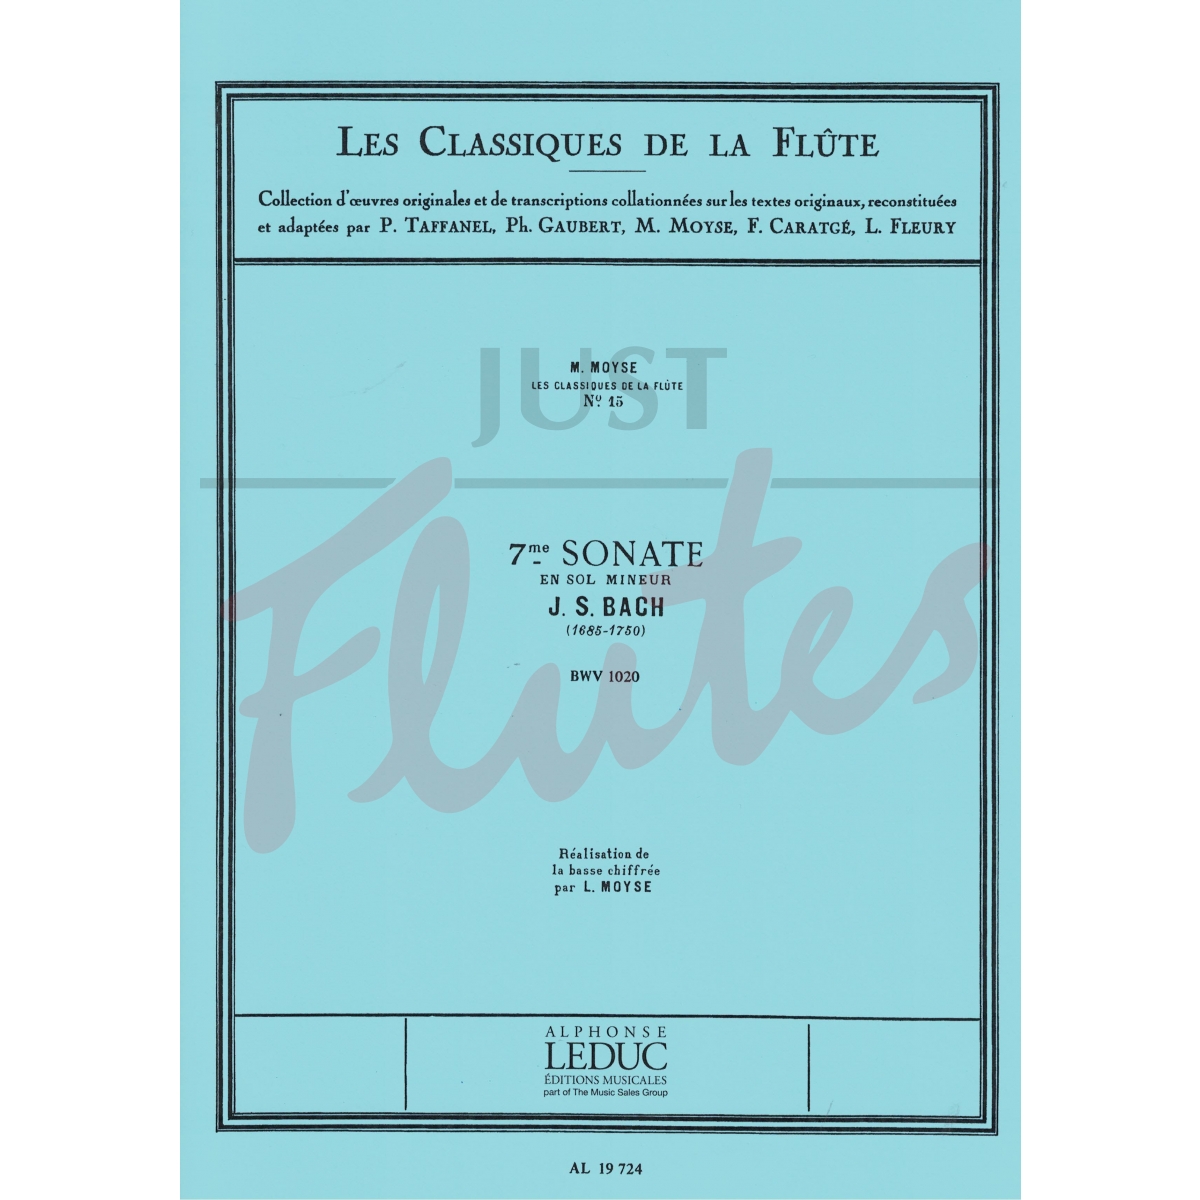 Sonata No. 7 in G minor for Flute and Piano